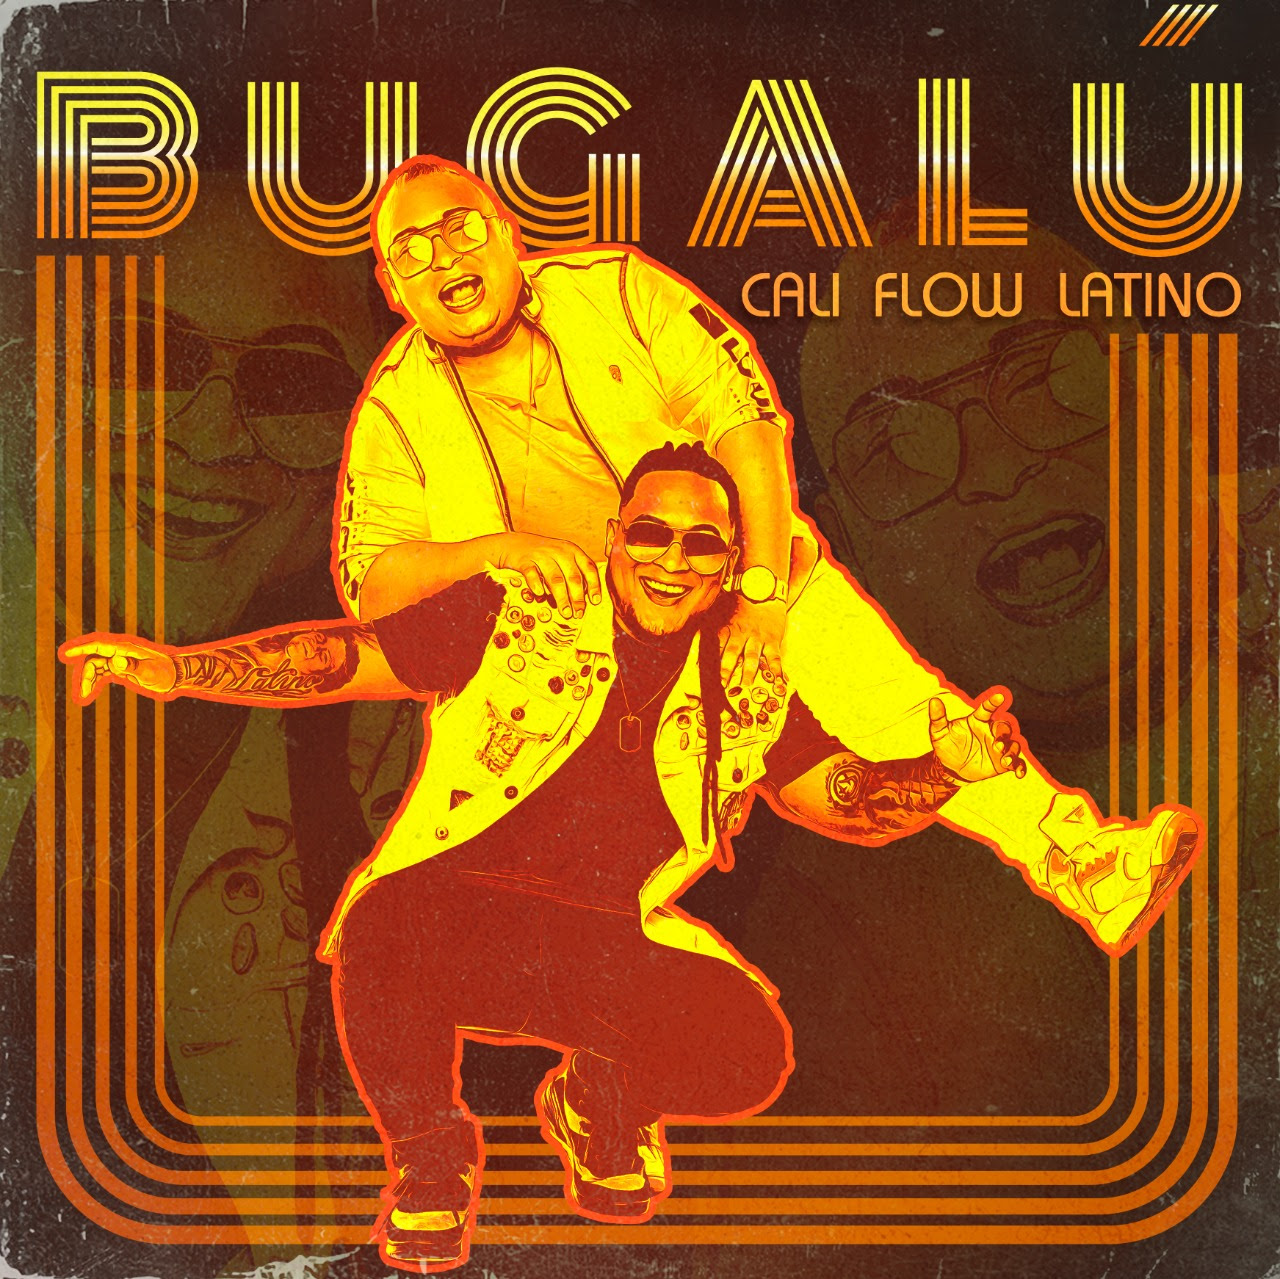 Cali Flow latino regresa con “BUGALÚ” su nuevo lanzamiento musical